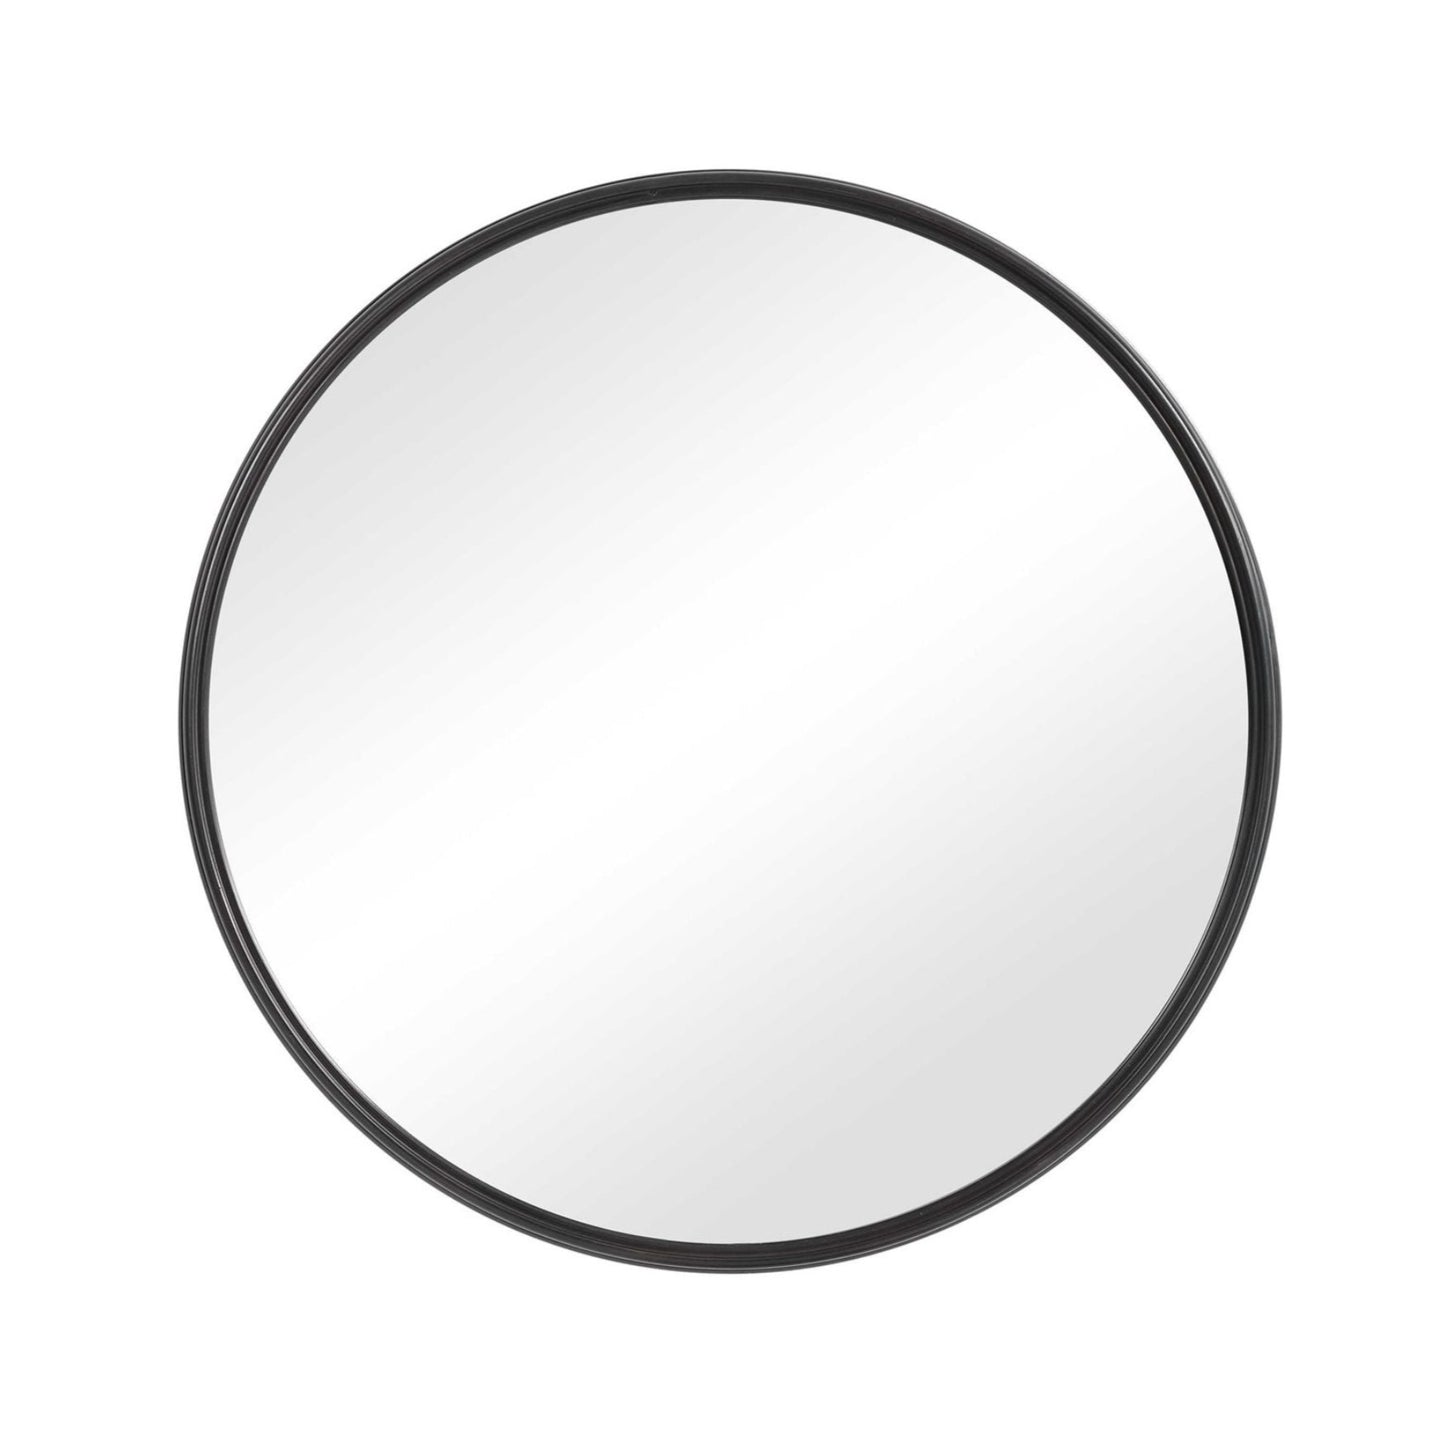 Aged black round mirror